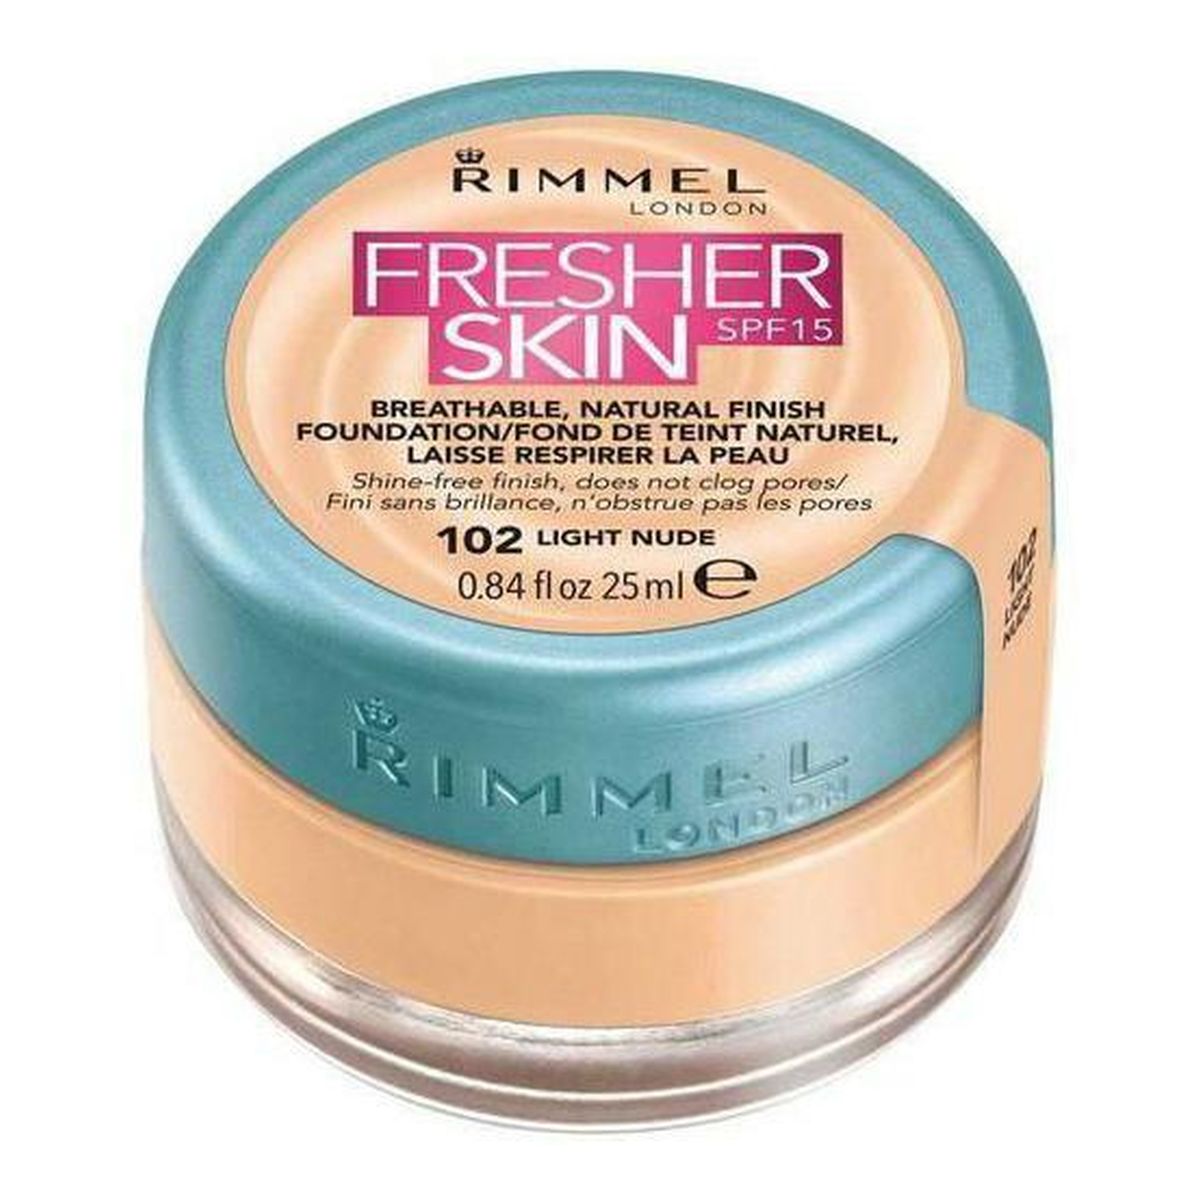 Rimmel Fresher Skin Finish Foundation Podkład do twarzy 25ml